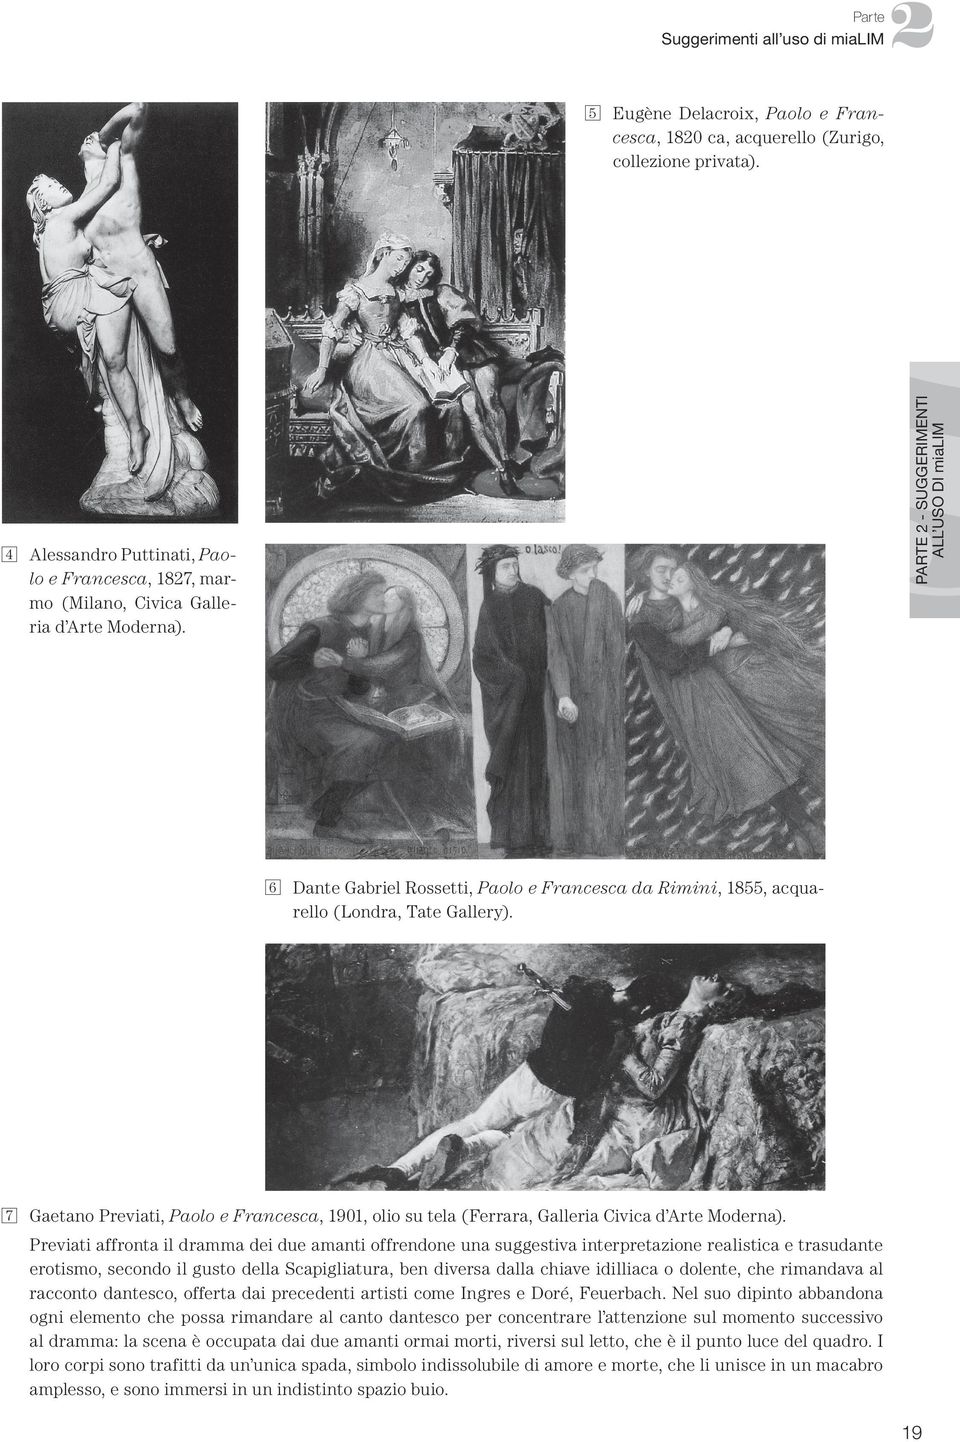 PARTE 2 - SUGGERIMENTI ALL USO DI mialim 6 Dante Gabriel Rossetti, Paolo e Francesca da Rimini, 1855, acquarello (Londra, Tate Gallery).